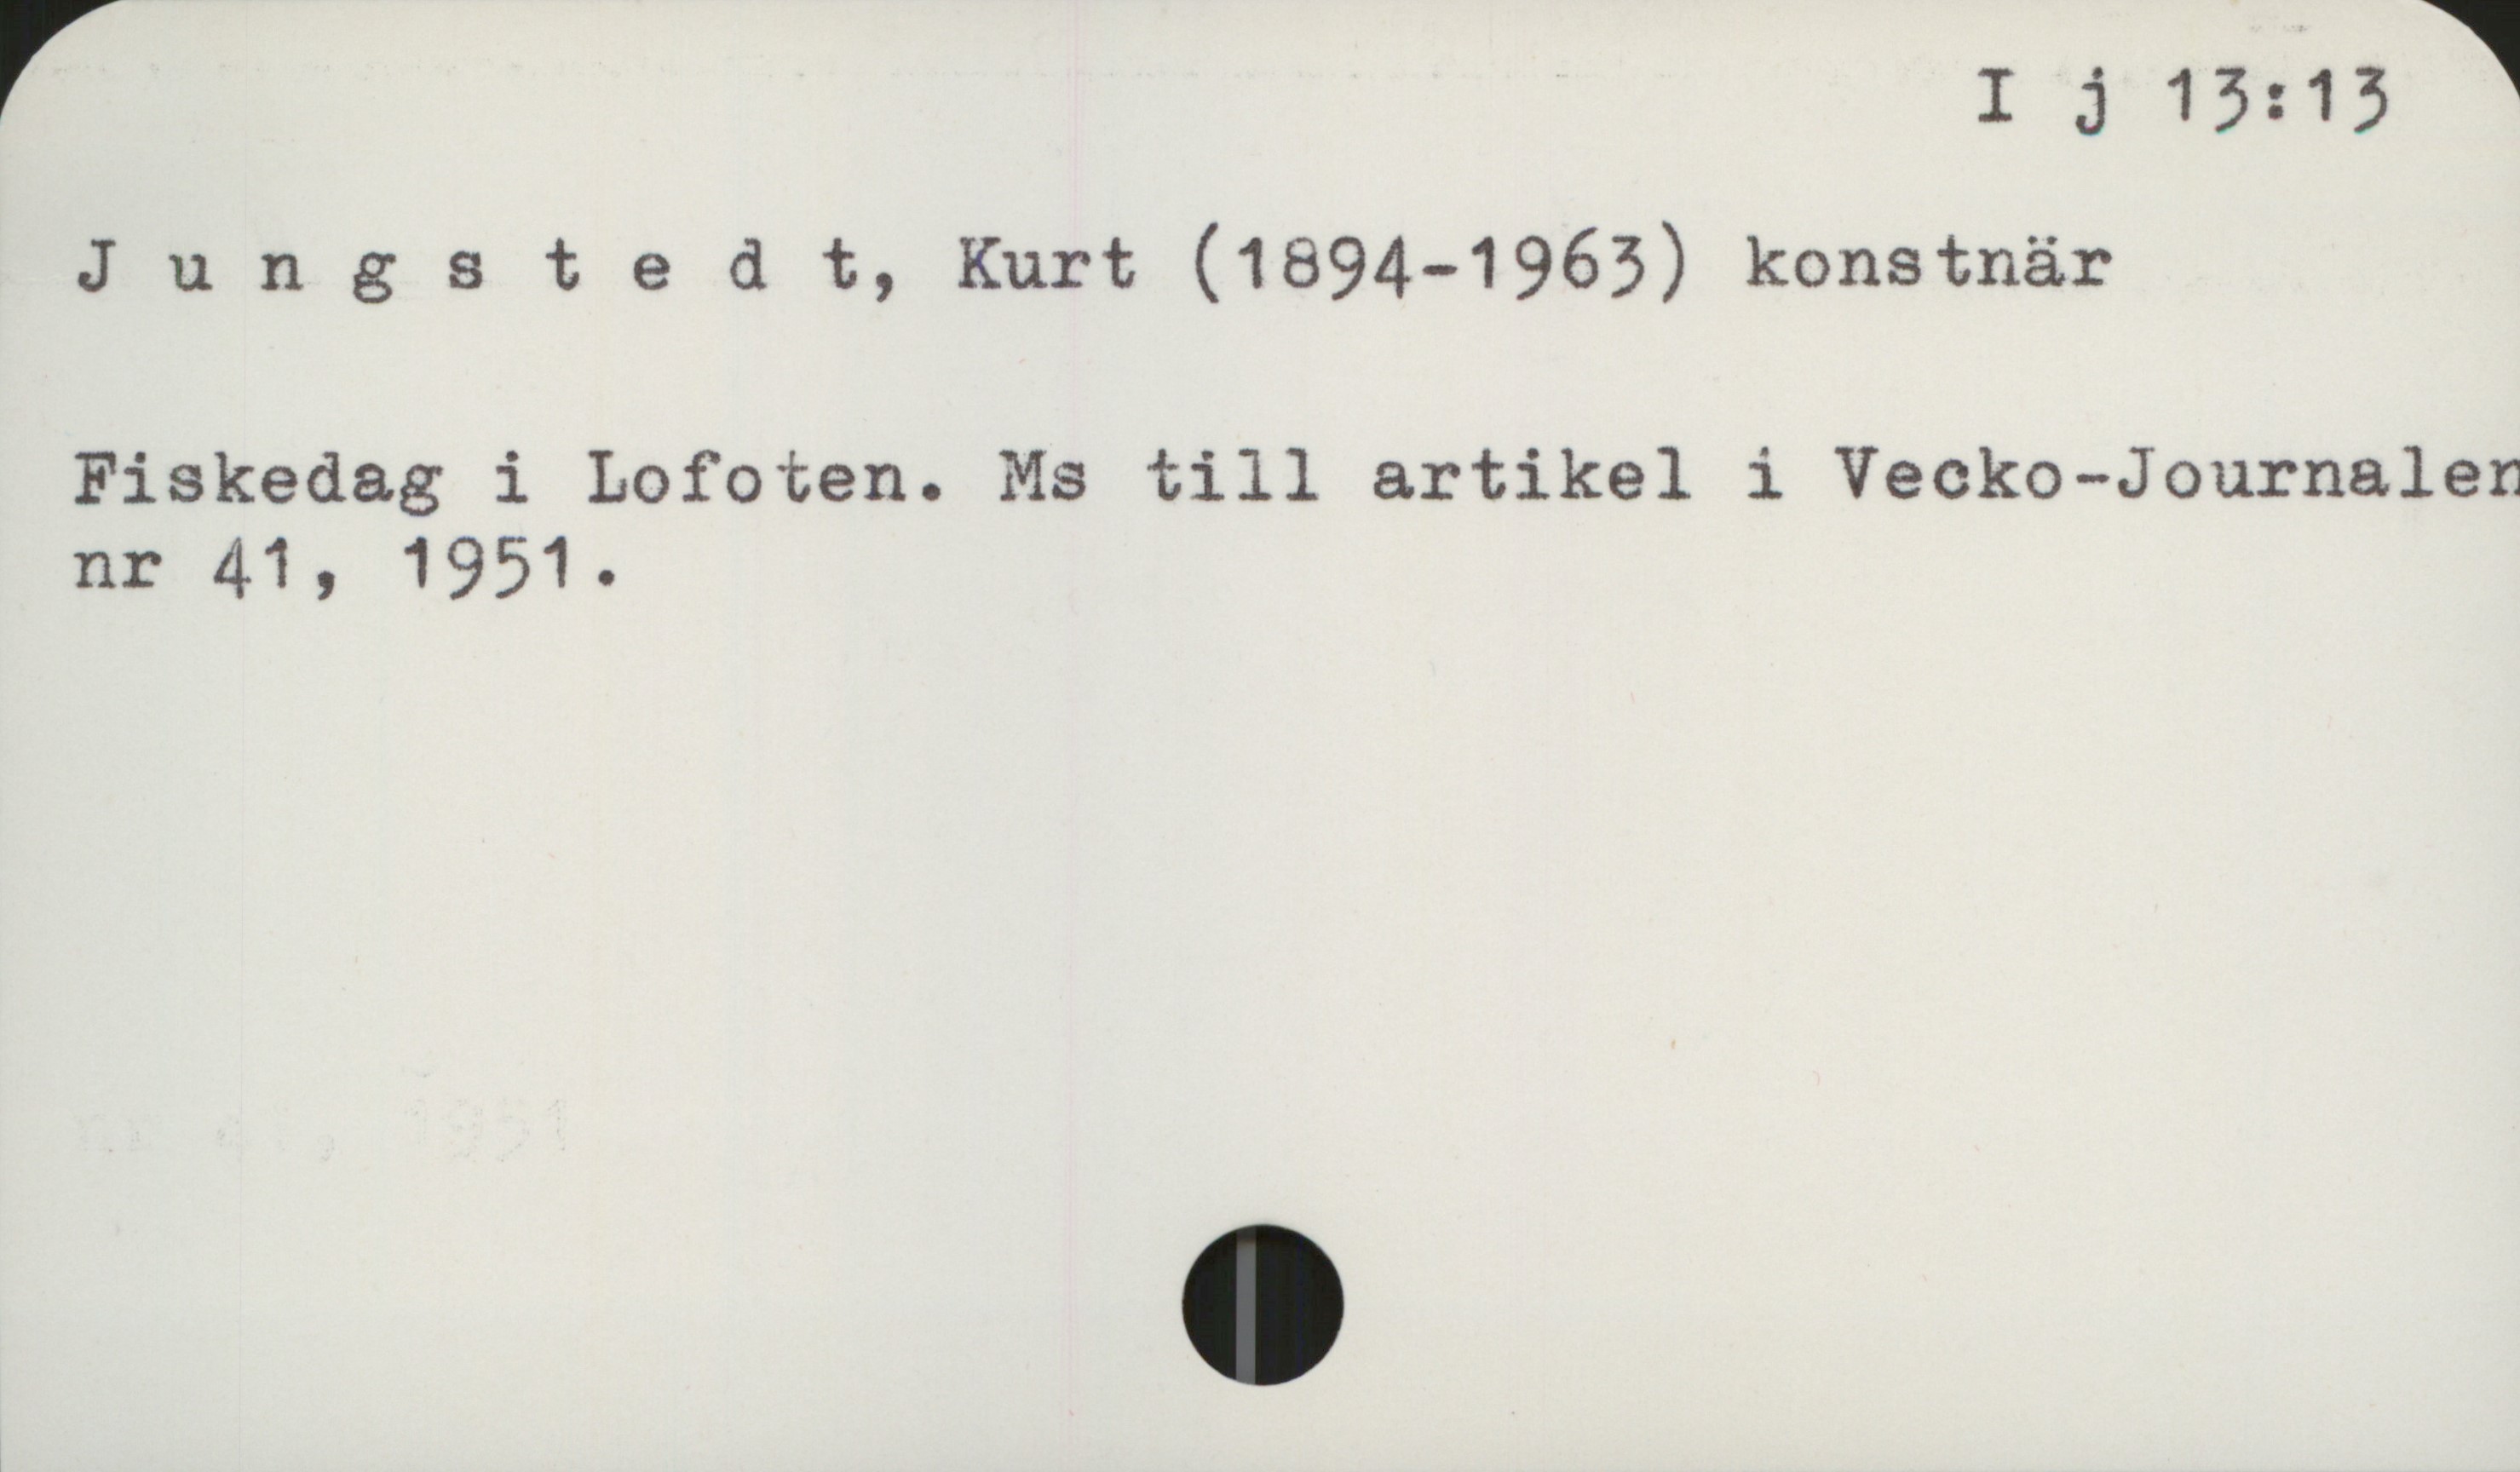 Jungstedt, Kurt (1894-1963) I j 13: 13

Jungstedt, Kurt (1894-1963) konstnär

Fiskedag i Lofoten. Ms till artikel i Vecko-Journalen
nr 41, 1951